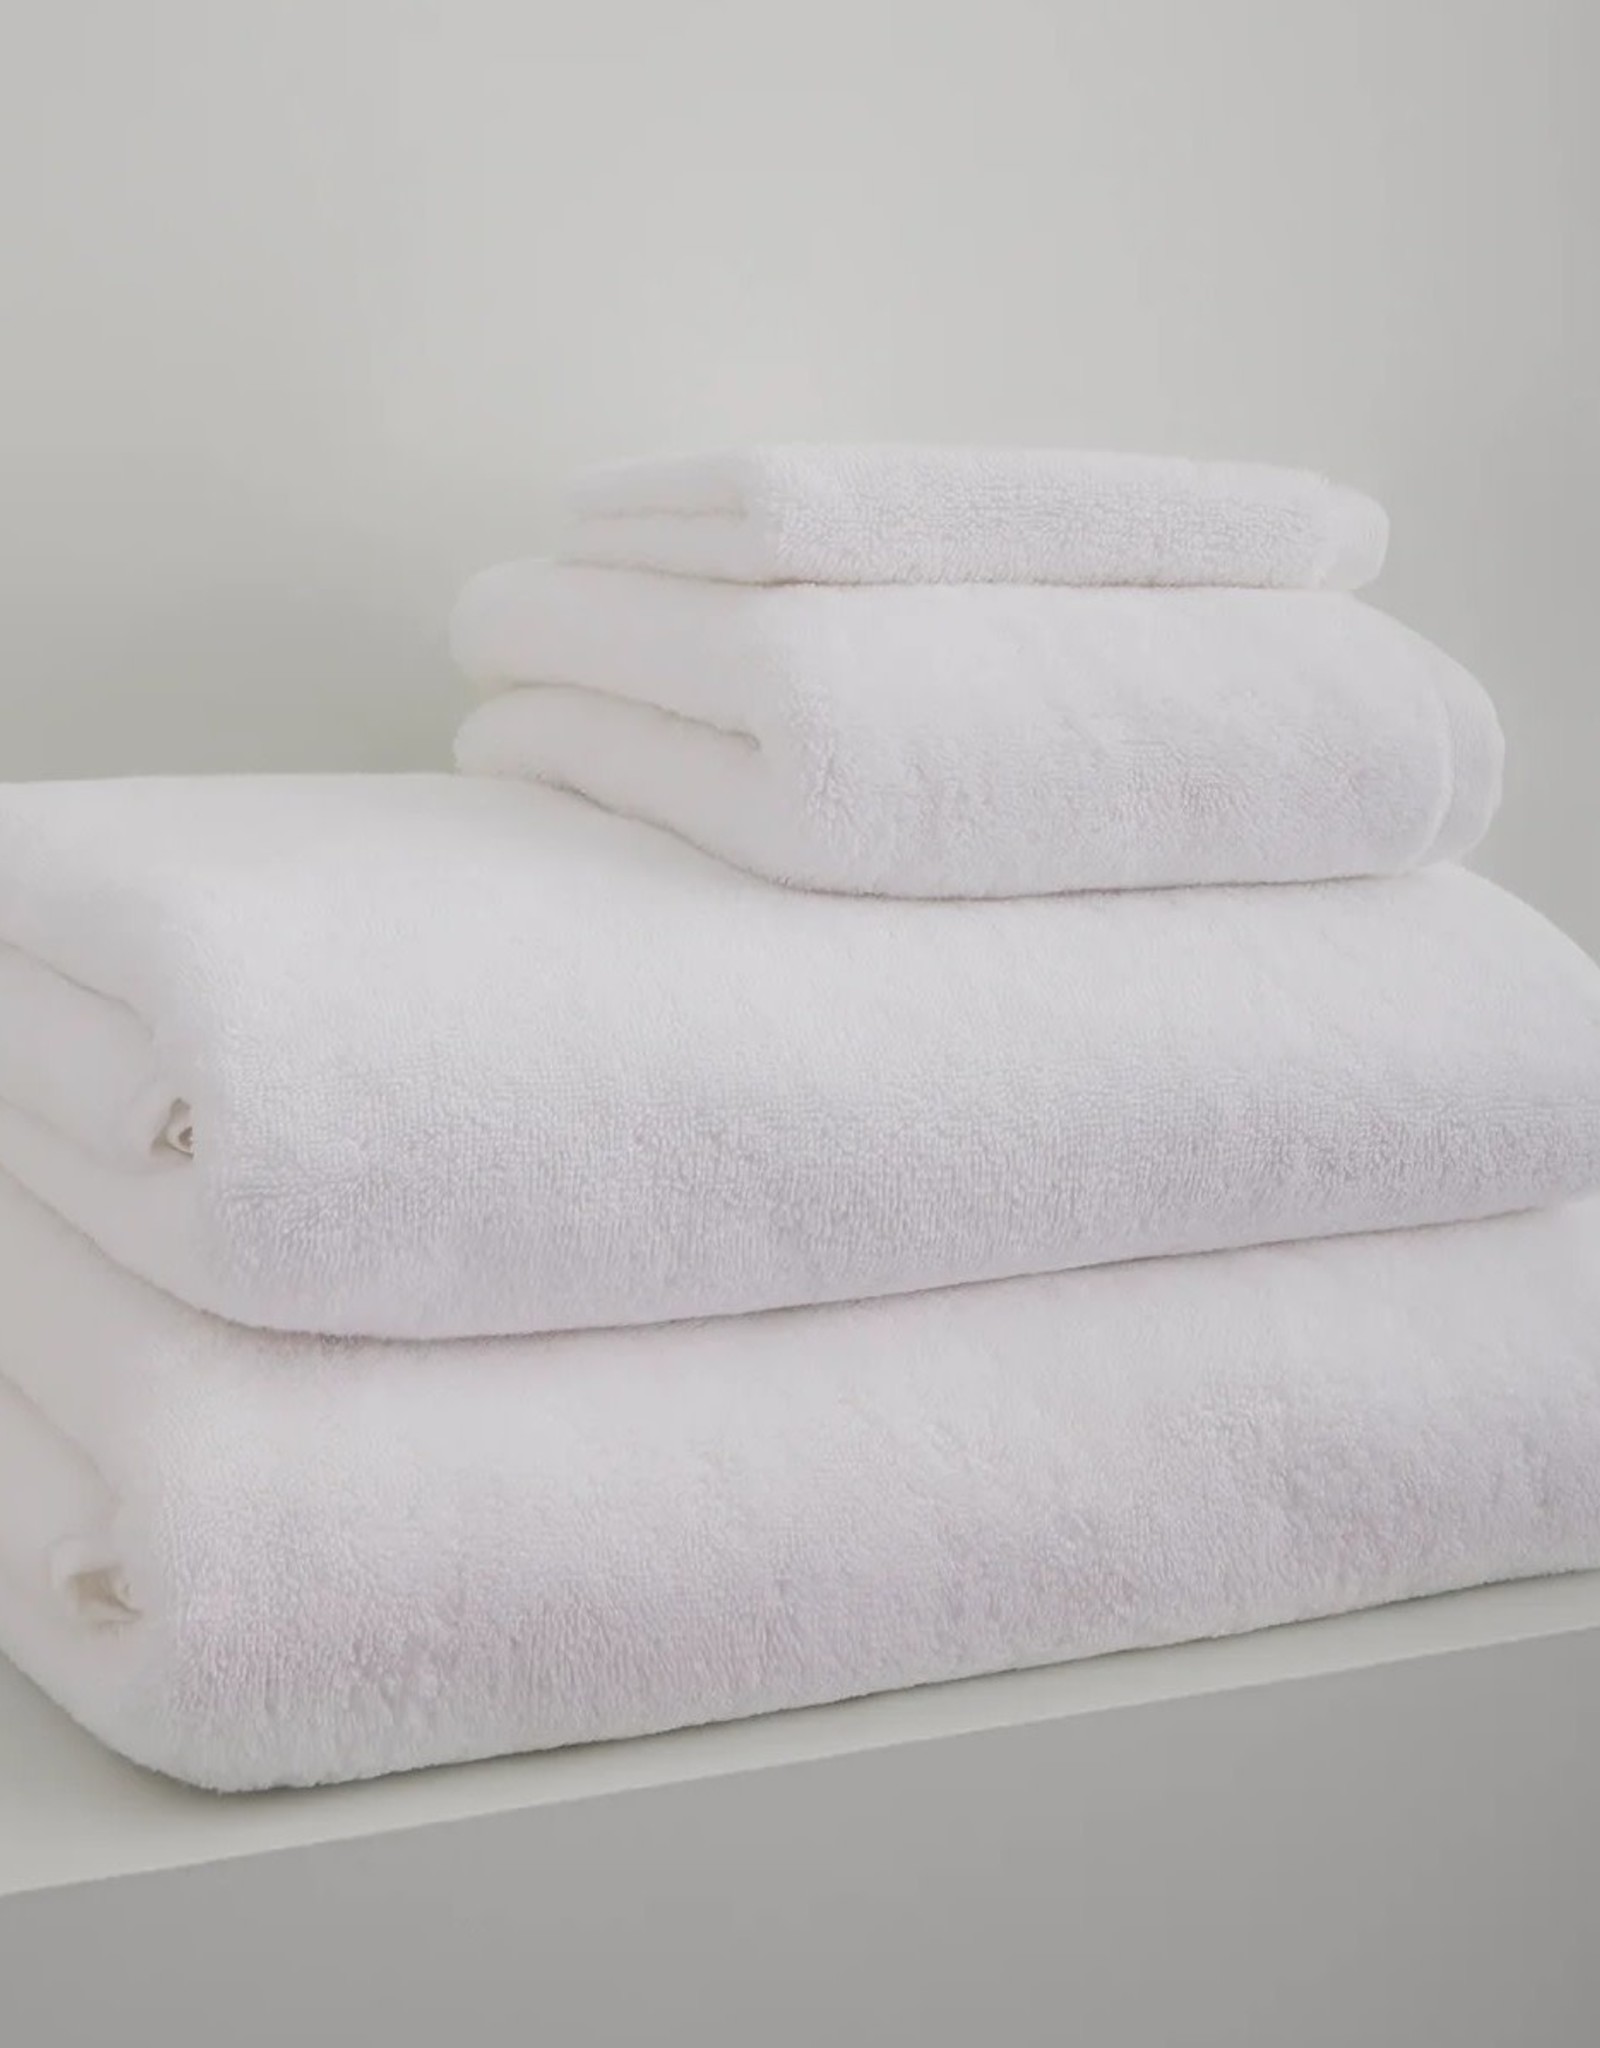 Adaste Home Inc Soft Touch Bath Sheet, White